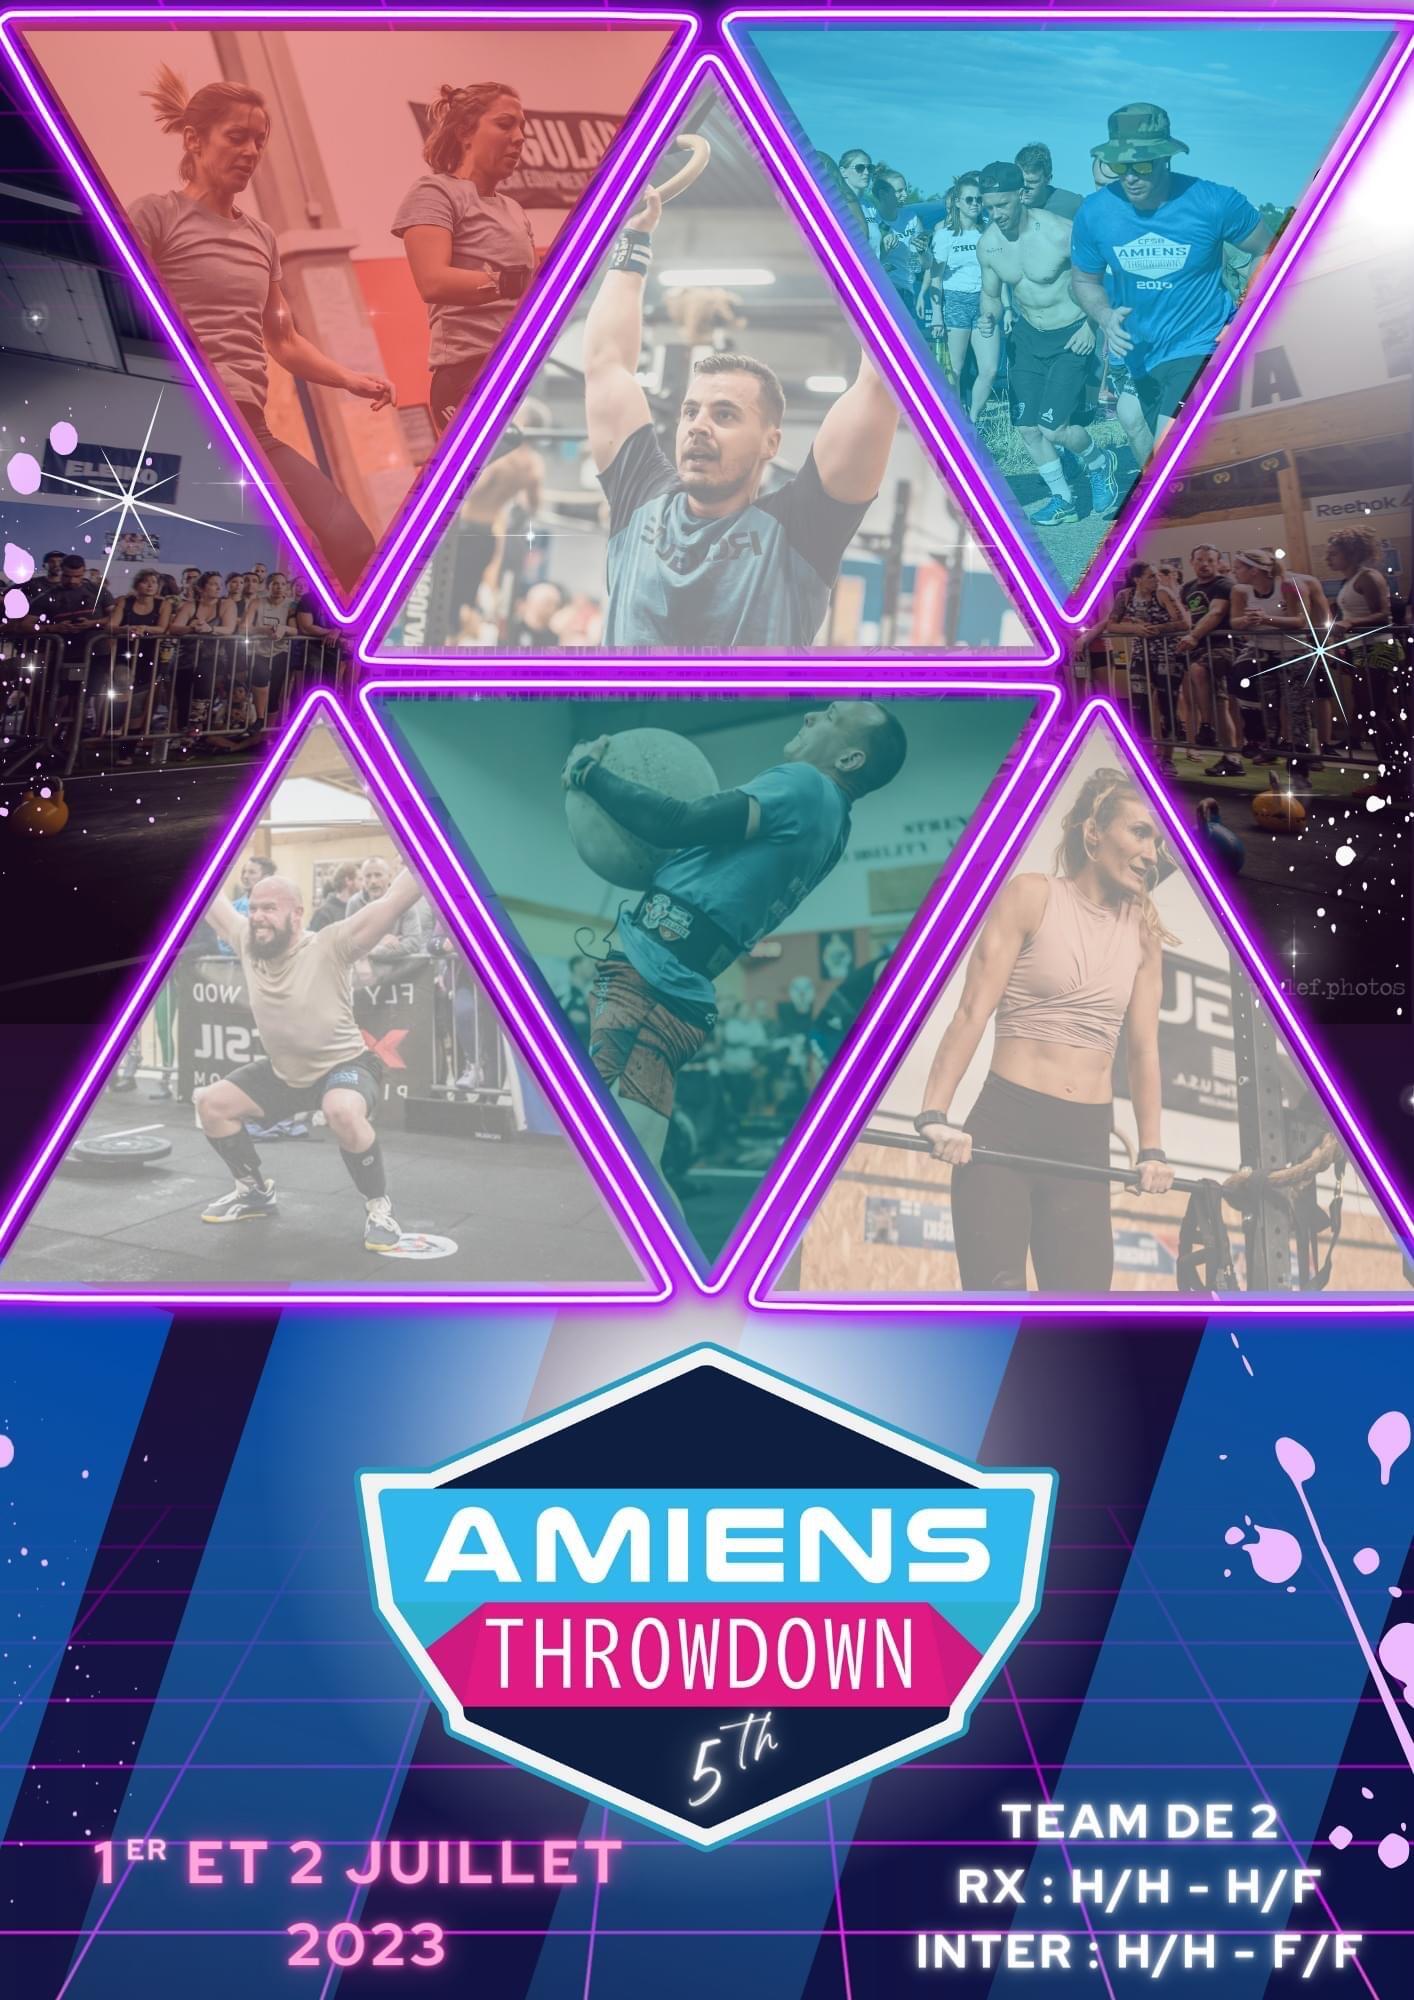 Amiens Throwdown : l'événement CrossFit revient pour sa 5ème édition ! 